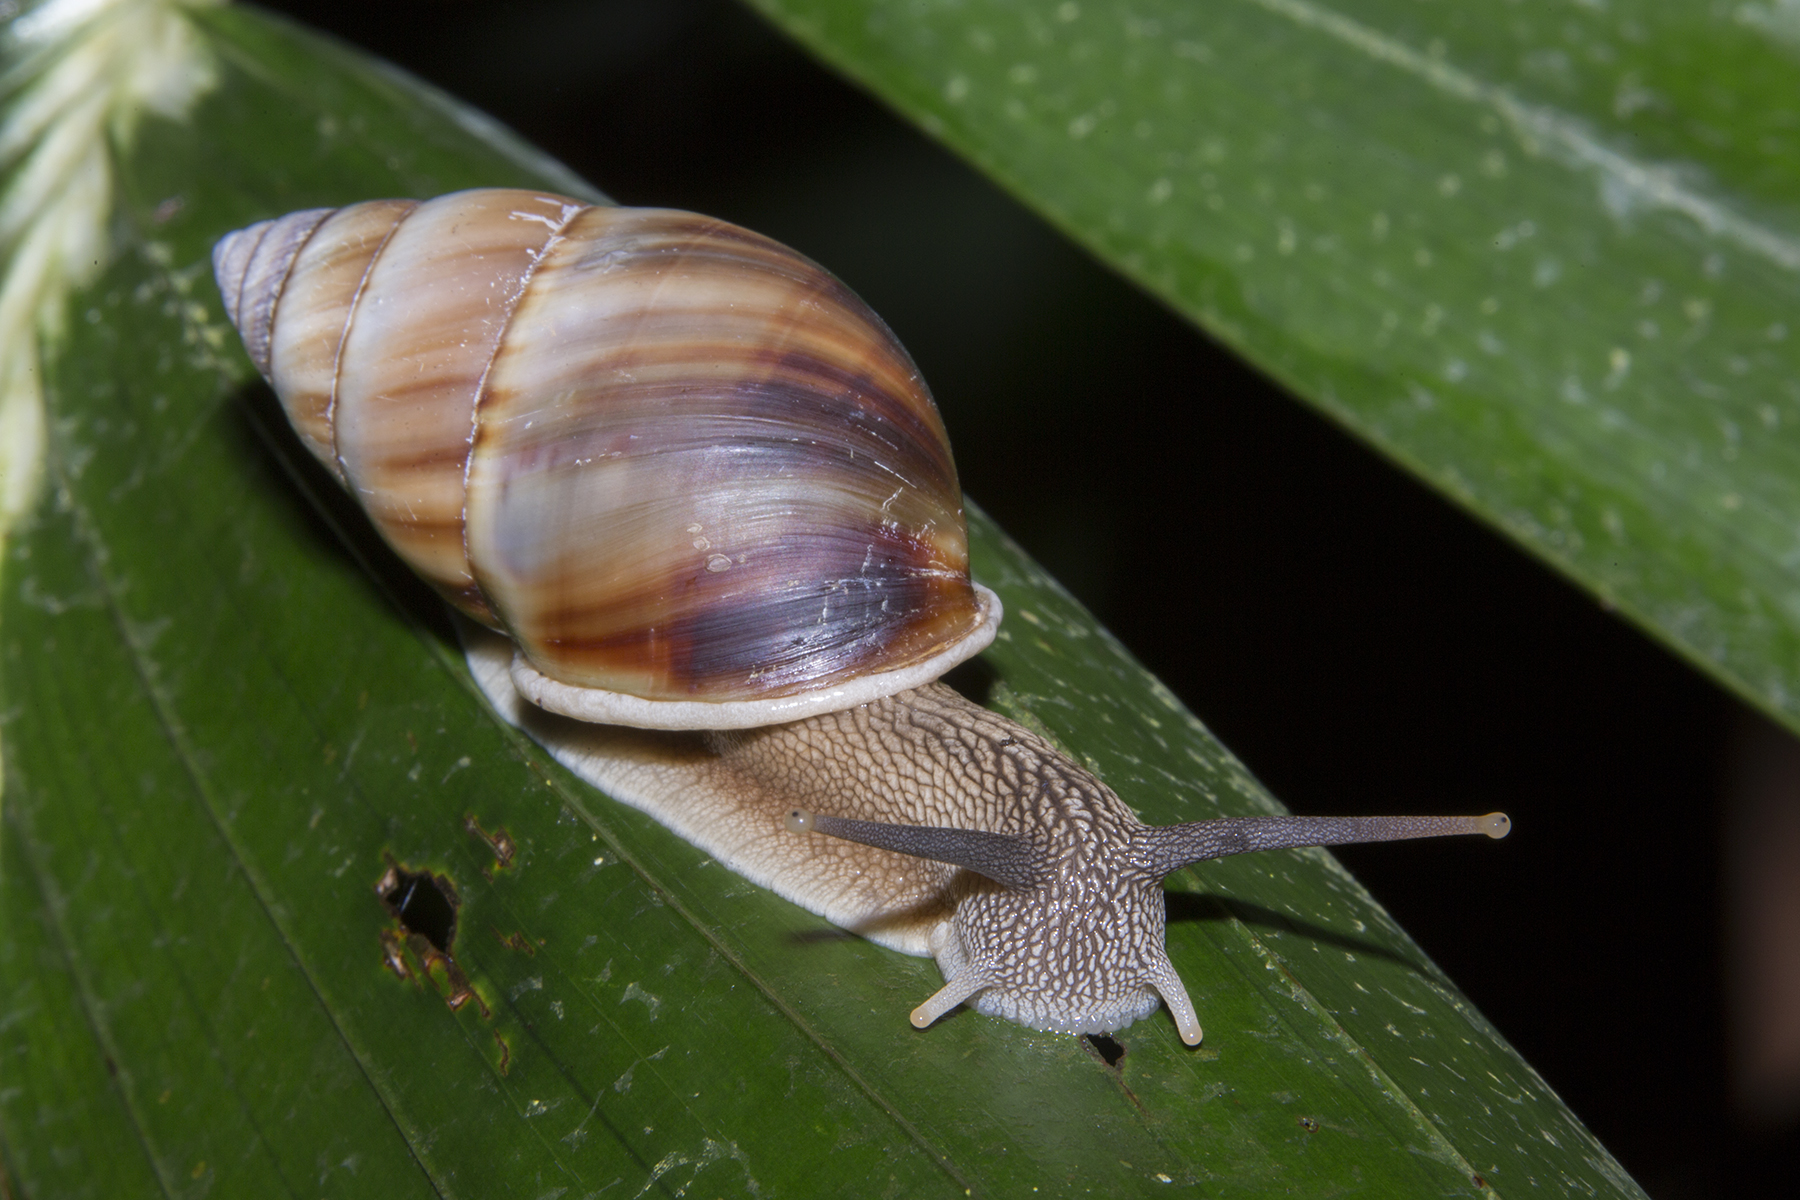 Photograph of a modern land snail.